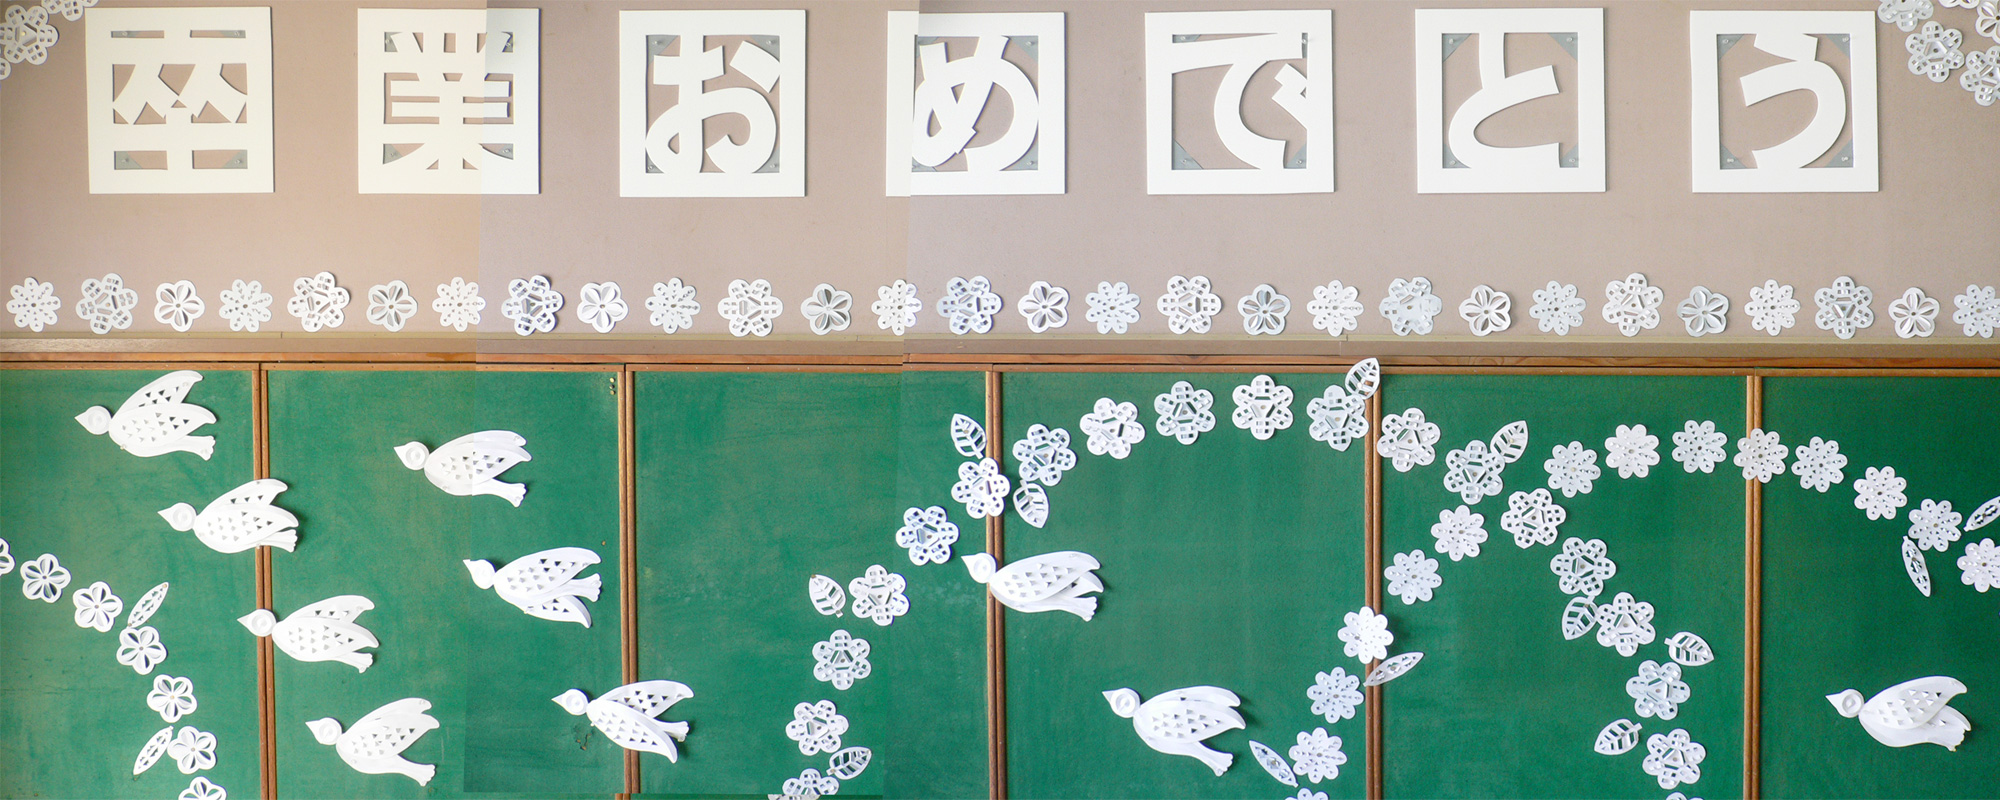 スチレンボードと白い紙で作る卒業式の壁面掲示「白い鳥と花」 | 図工人